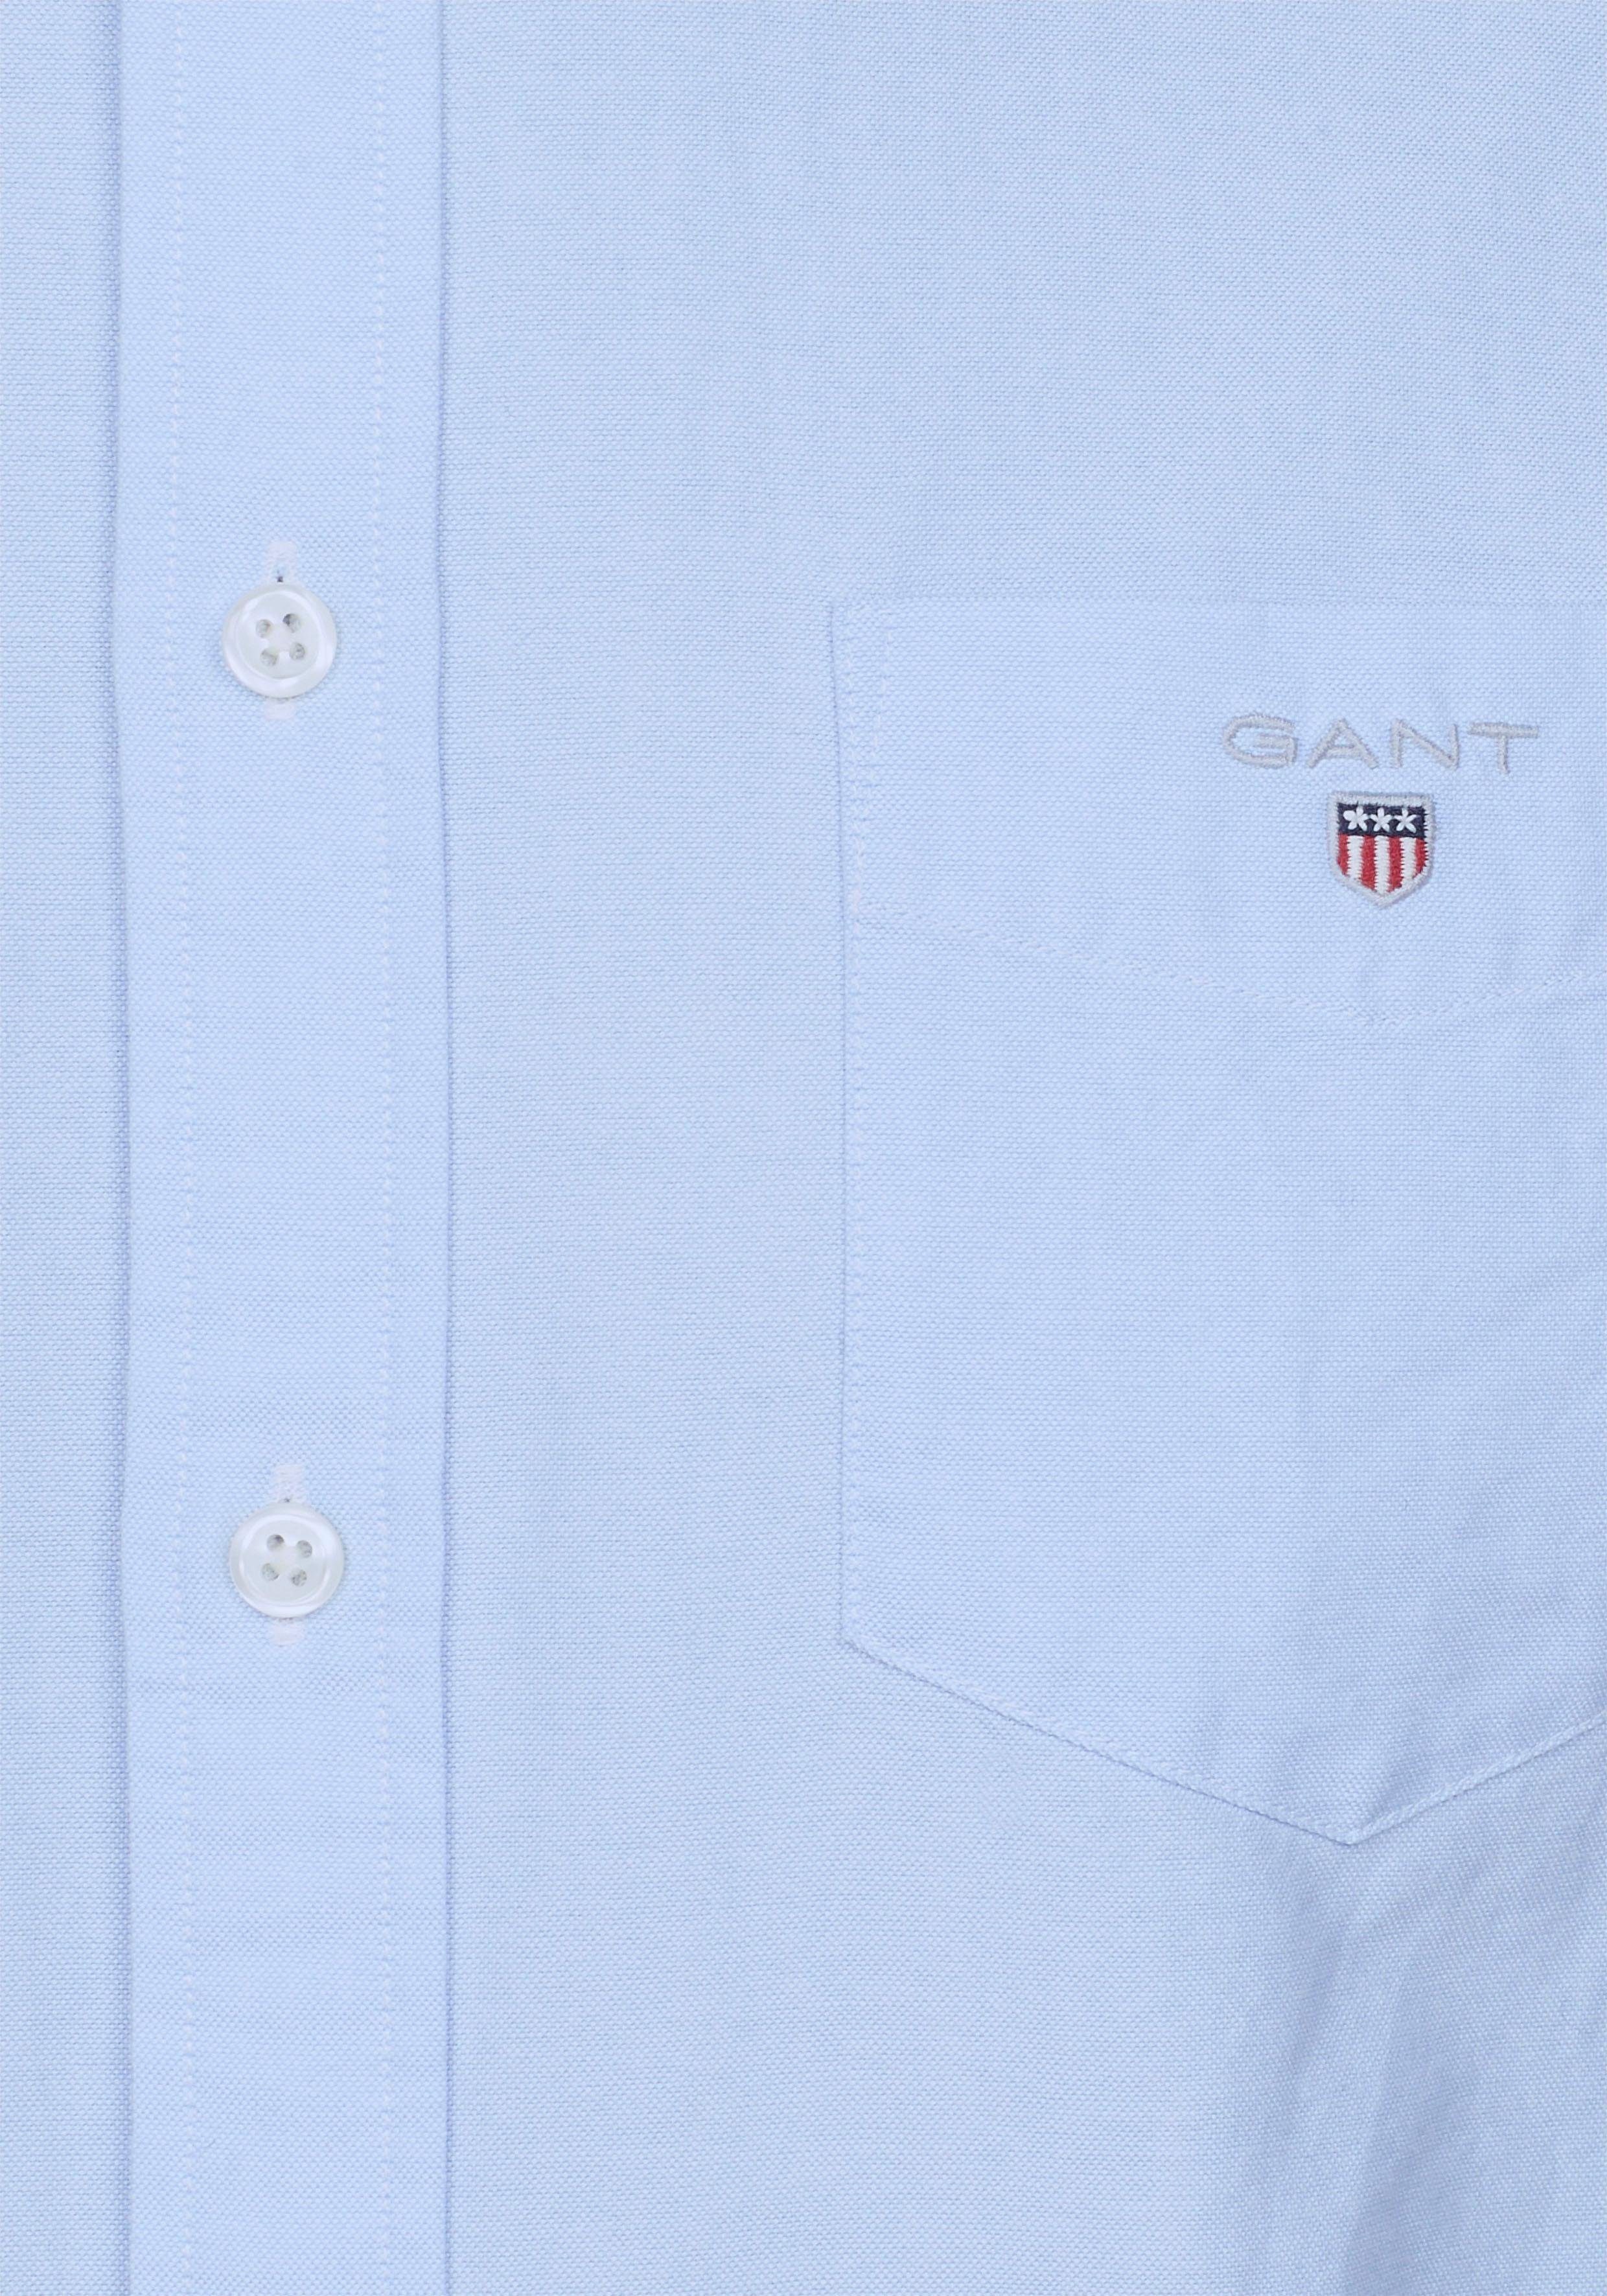 Gant Langarmhemd Oxford mit Logostickerei auf der blue Brusttasche capri